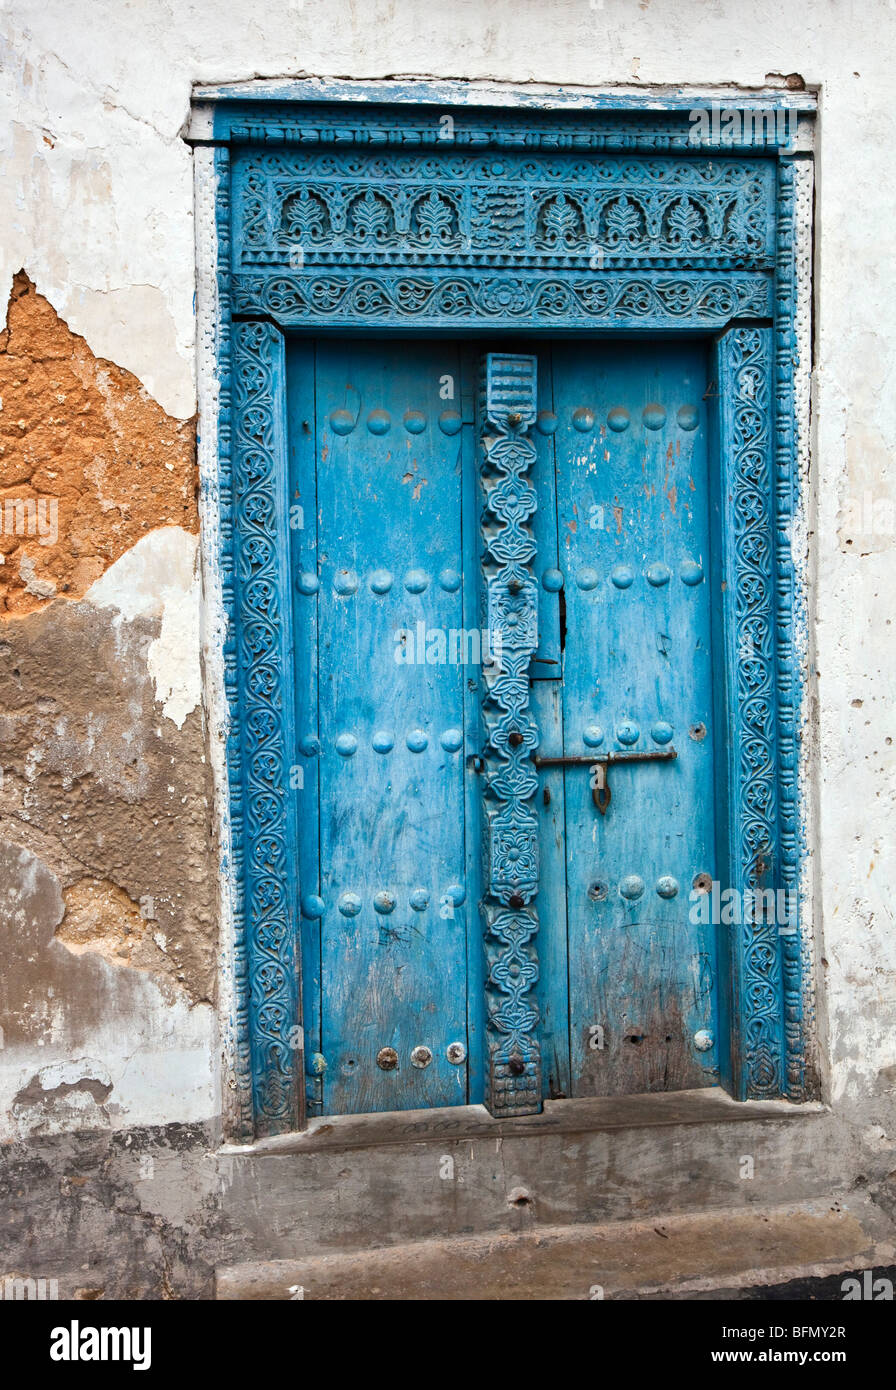 La Tanzanie, Zanzibar, Stone Town. Une porte en bois sculpté d'une maison de ville en pierre. Banque D'Images